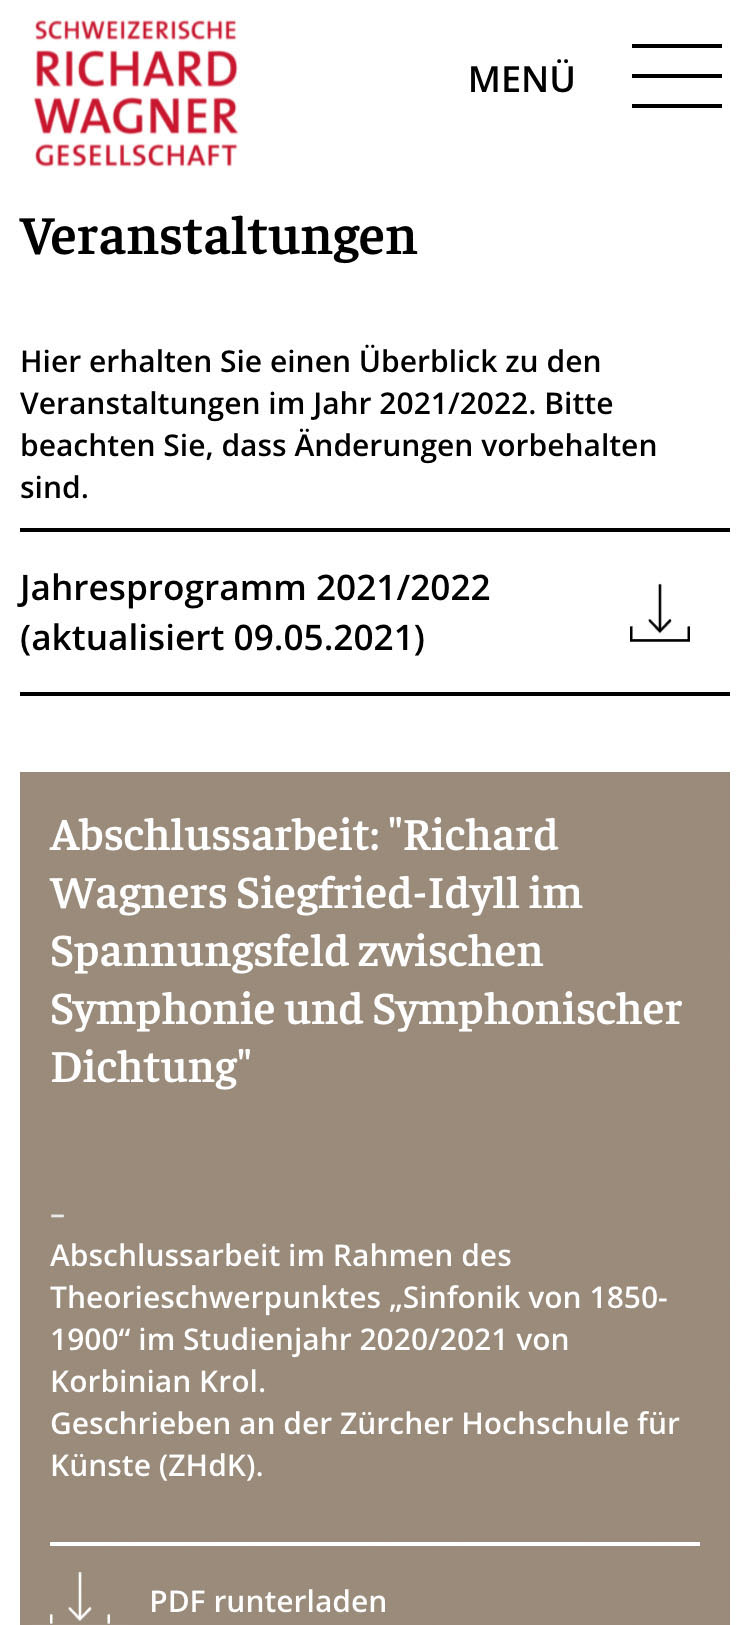 Schweizerische Richard Wagner-Gesellschaft (SRWG) Mobile